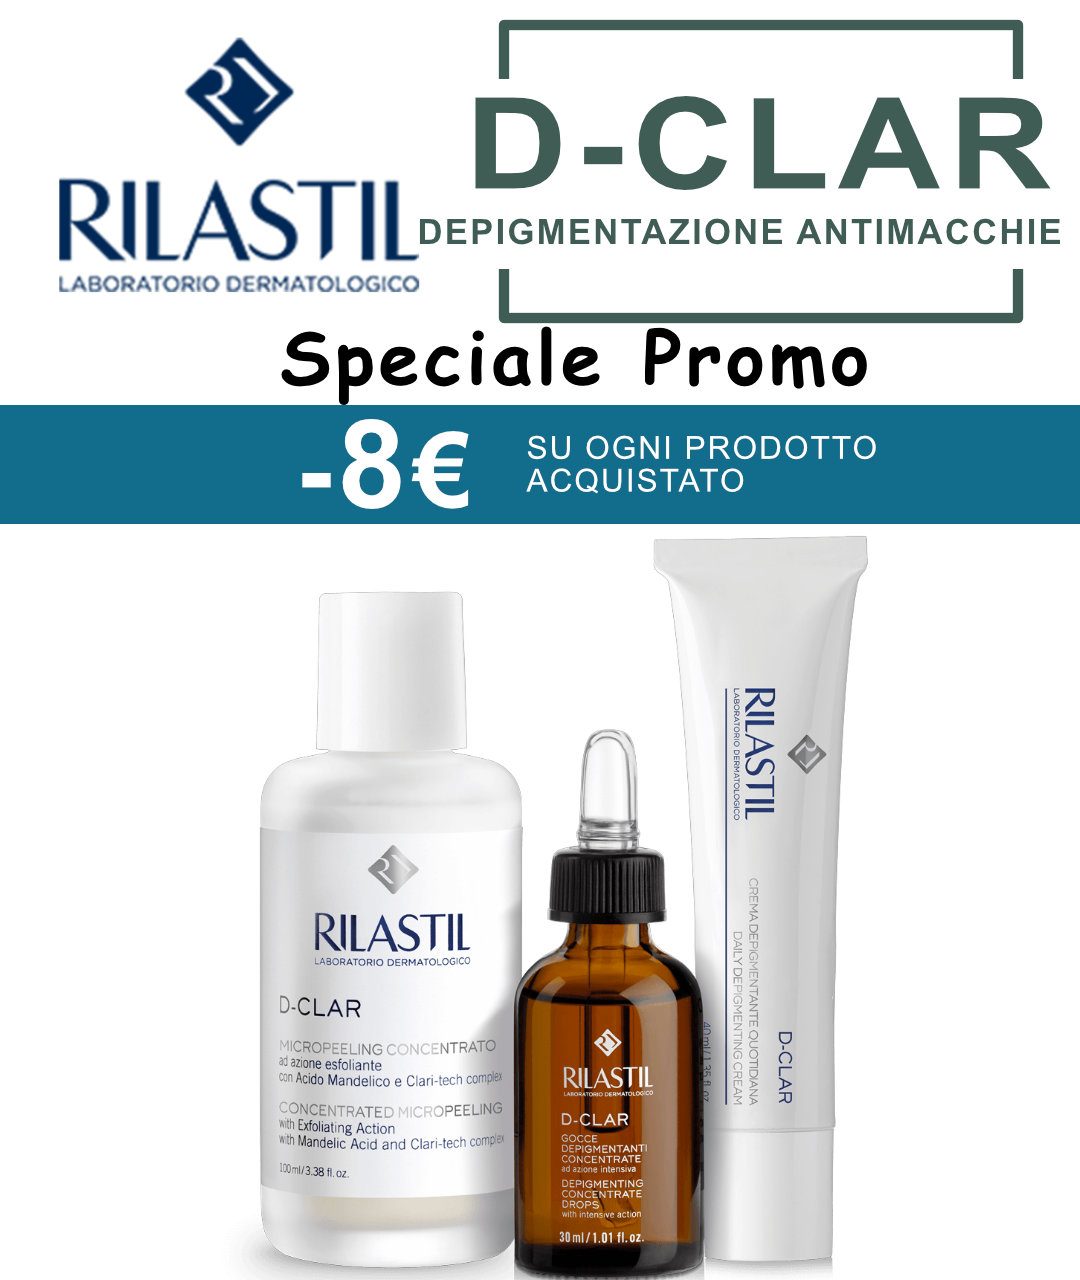 RILASTIL-D-CLAR-PROMO